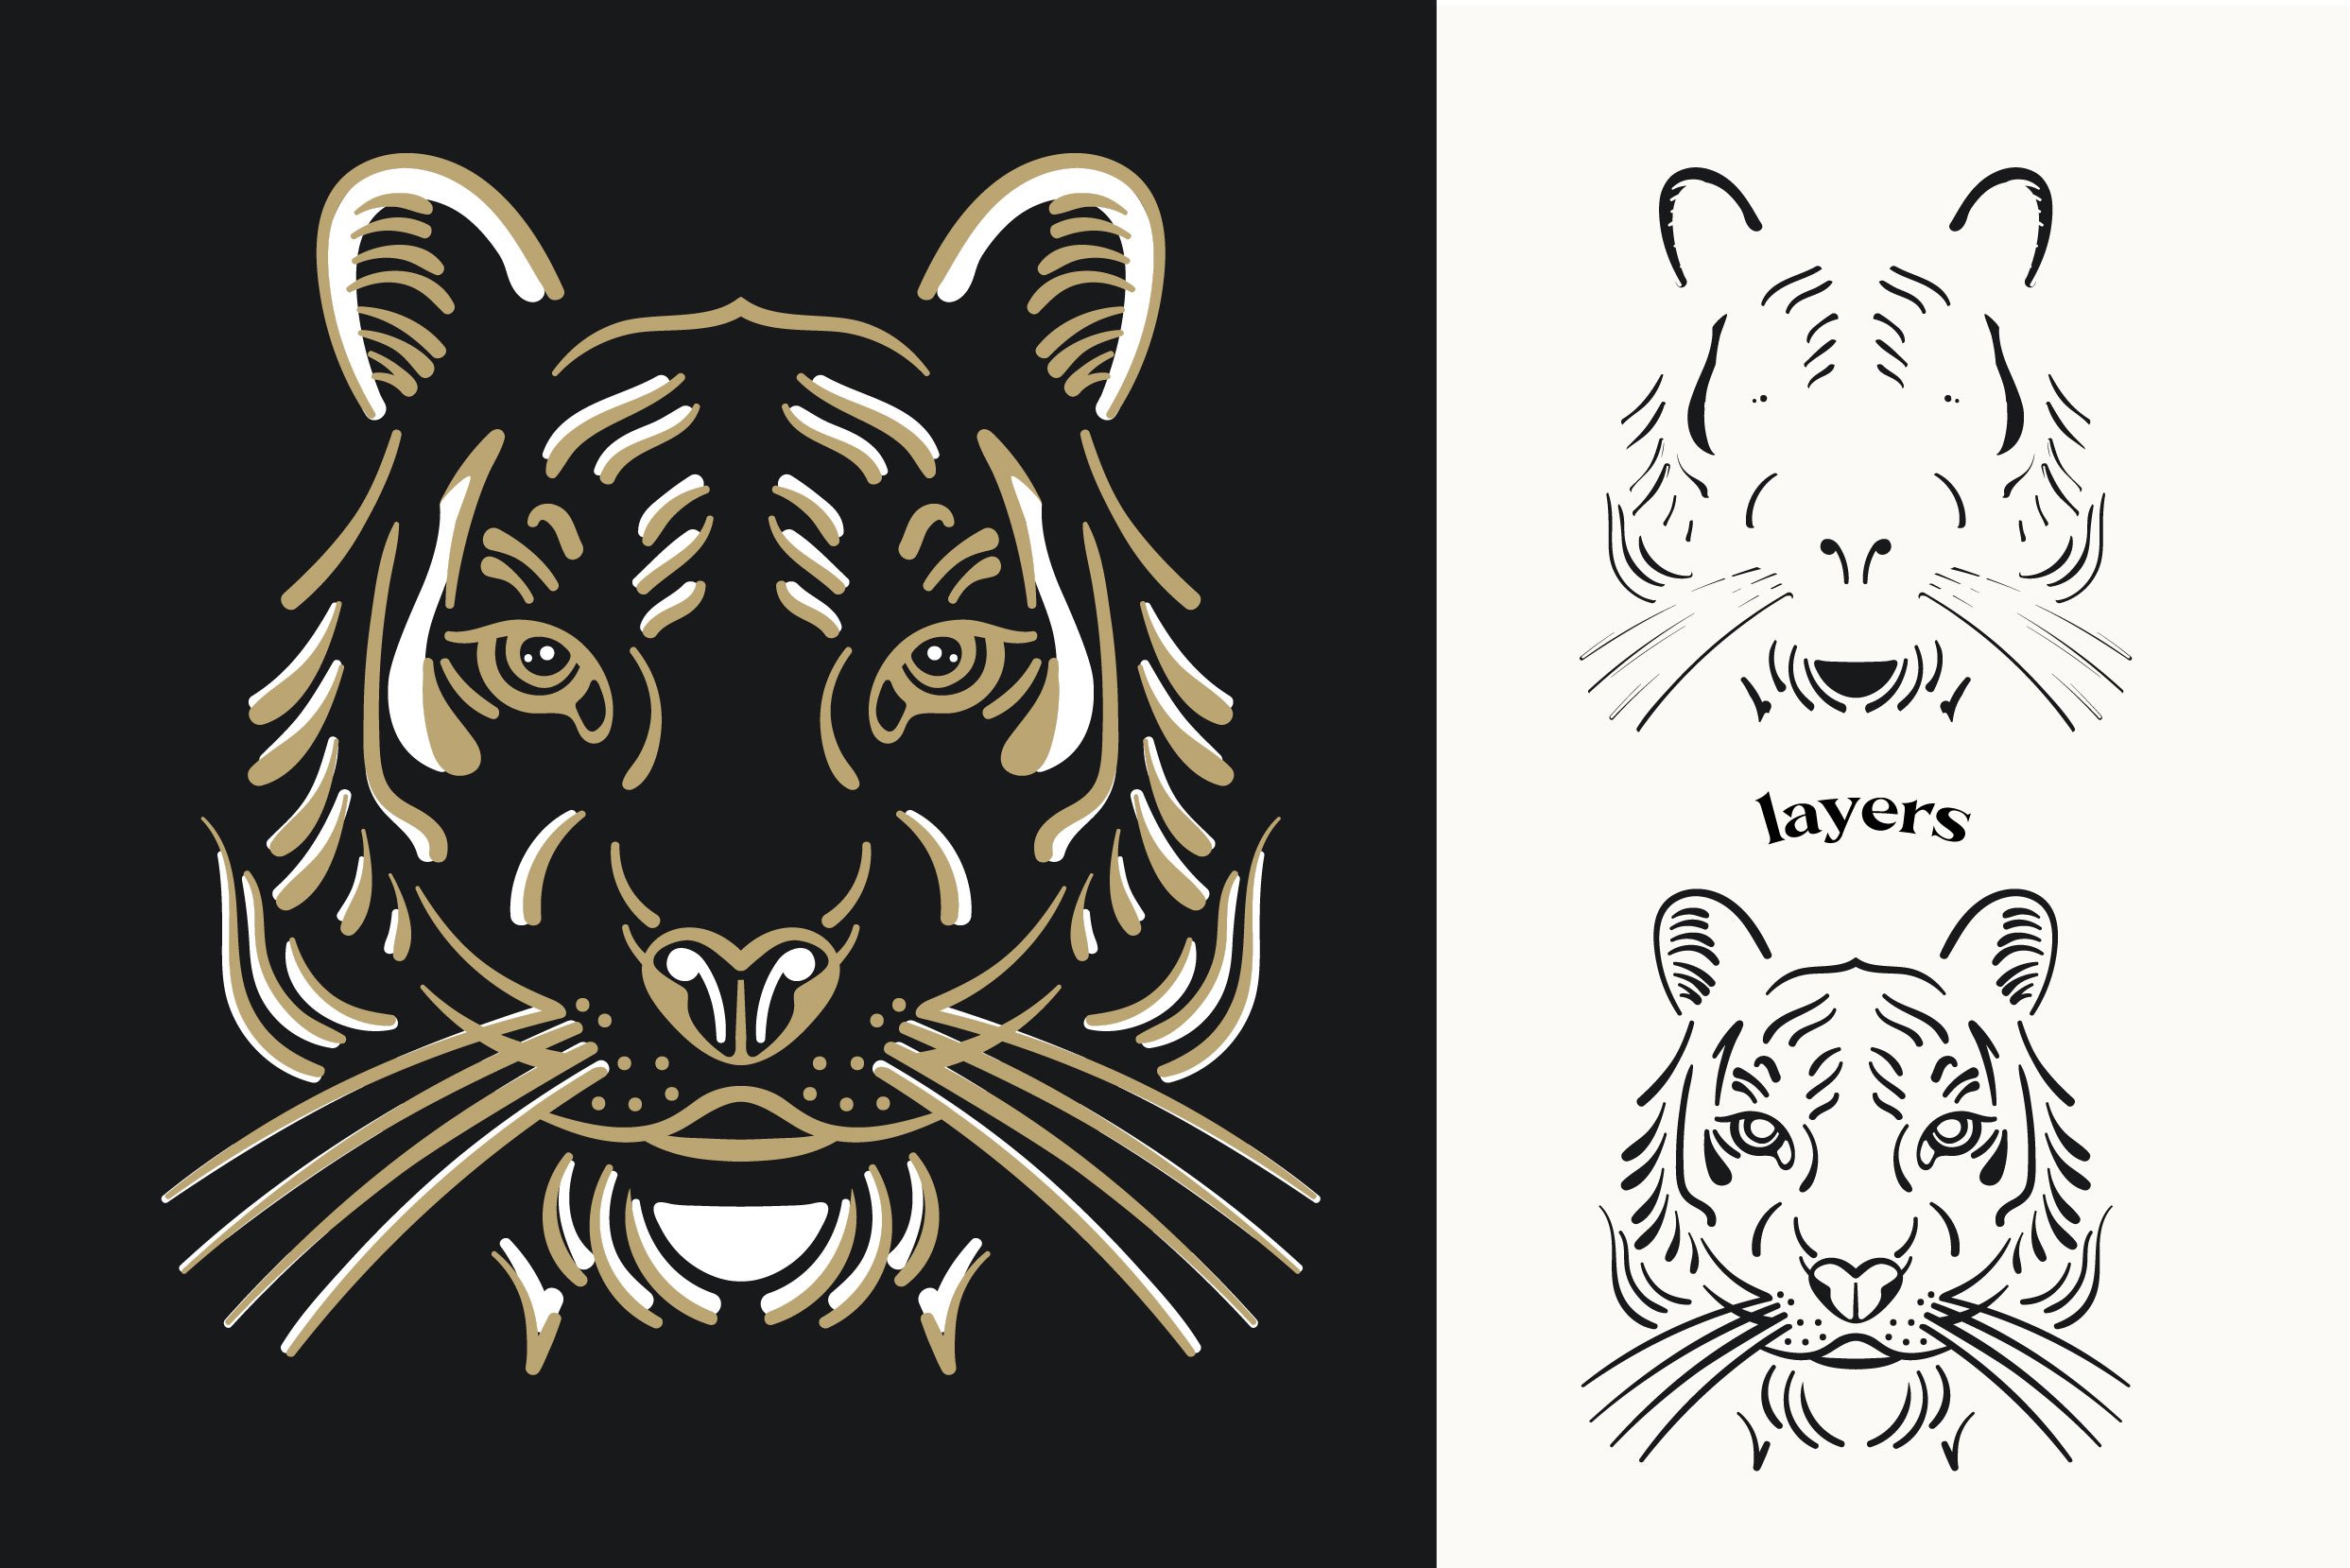 Tiger Illustrations.